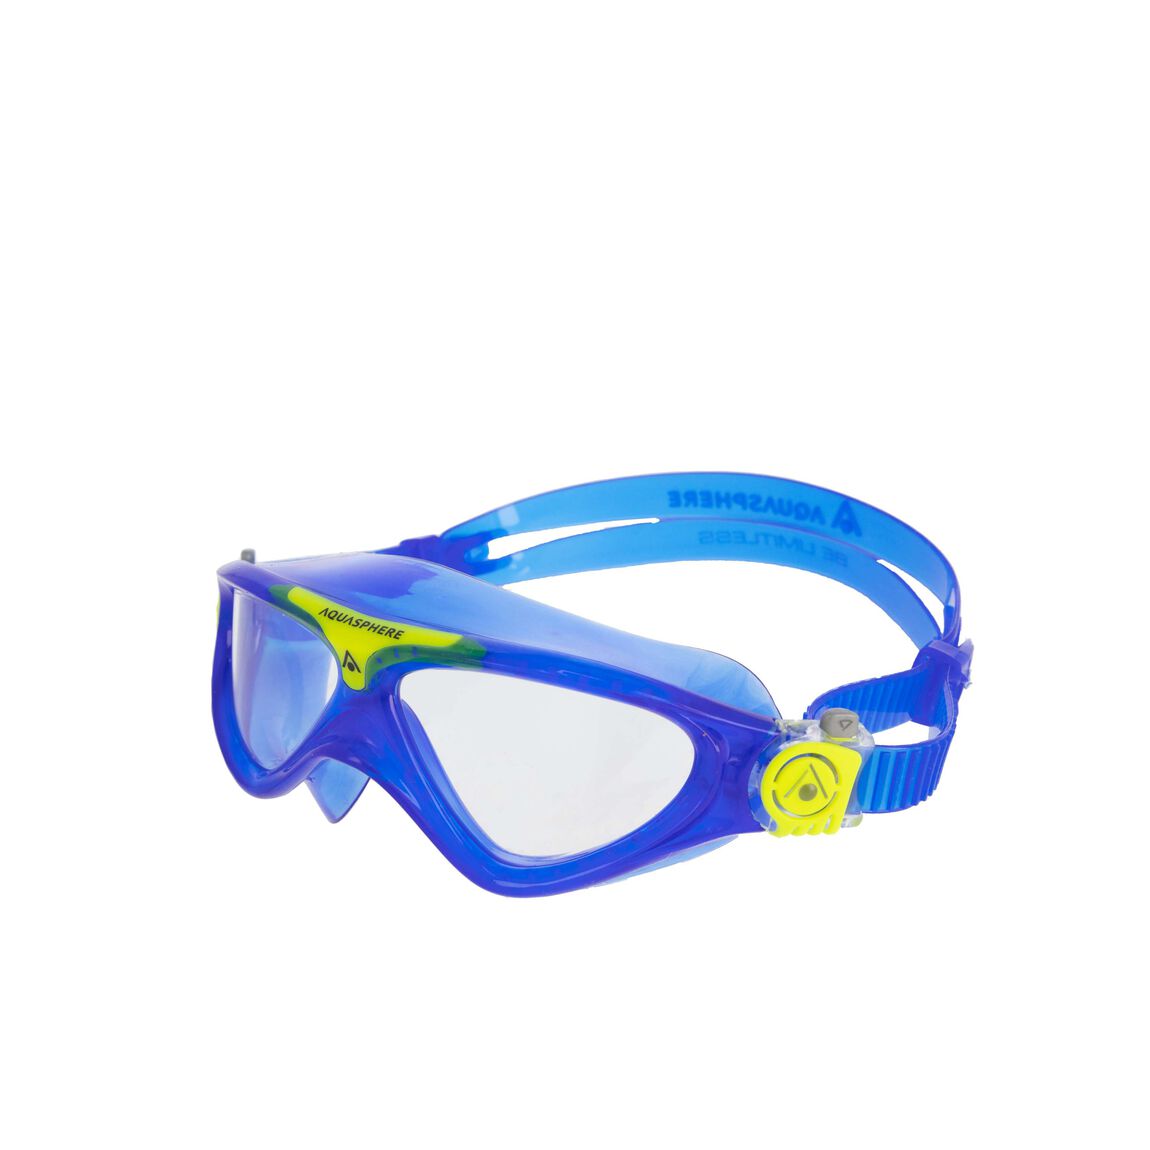 Aquasphere Vista Junior Swim Mask - Blue/Yellow